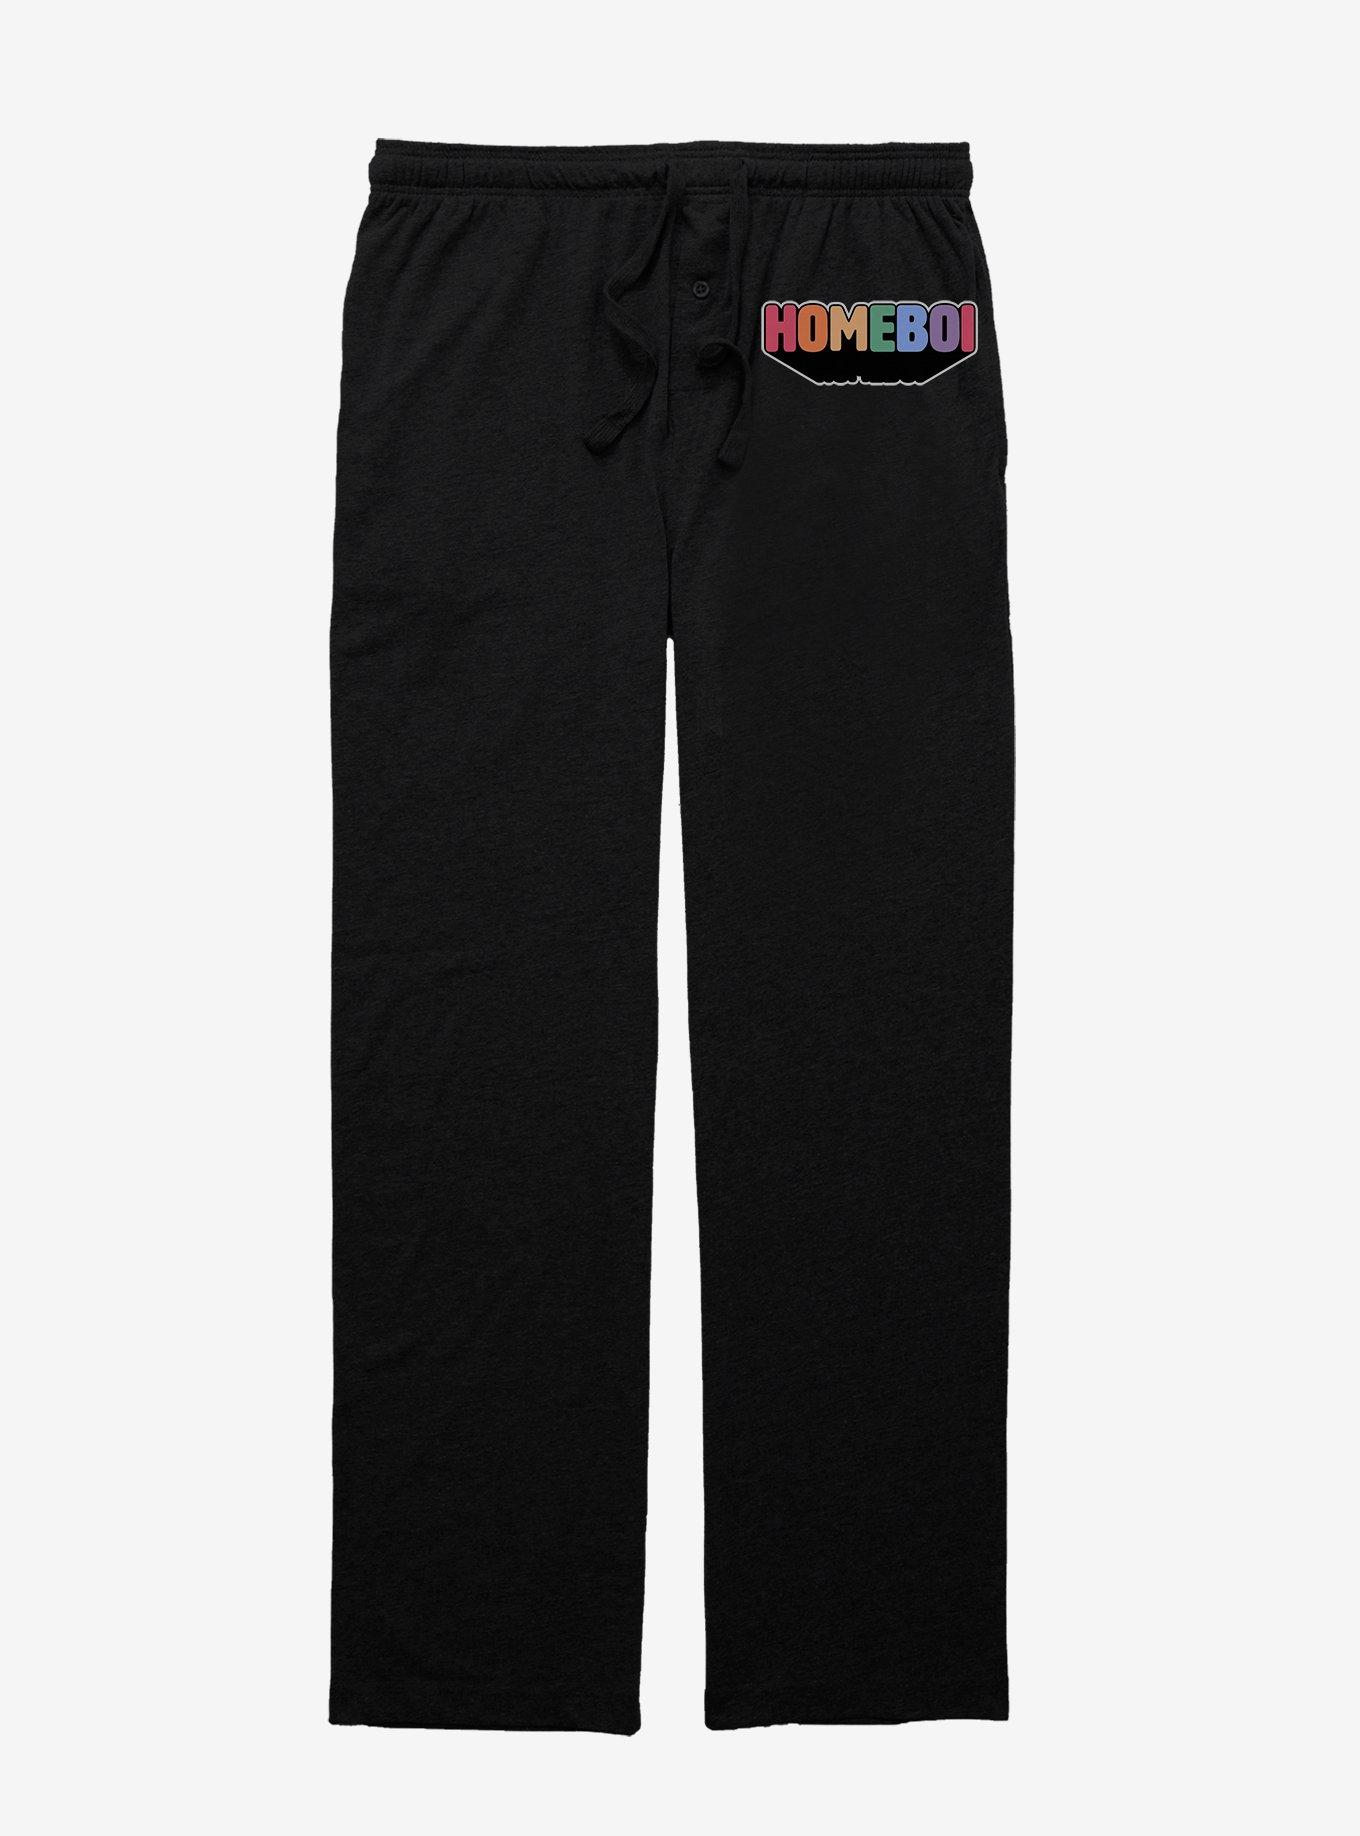 Homeboi Pajama Pants, BLACK, hi-res